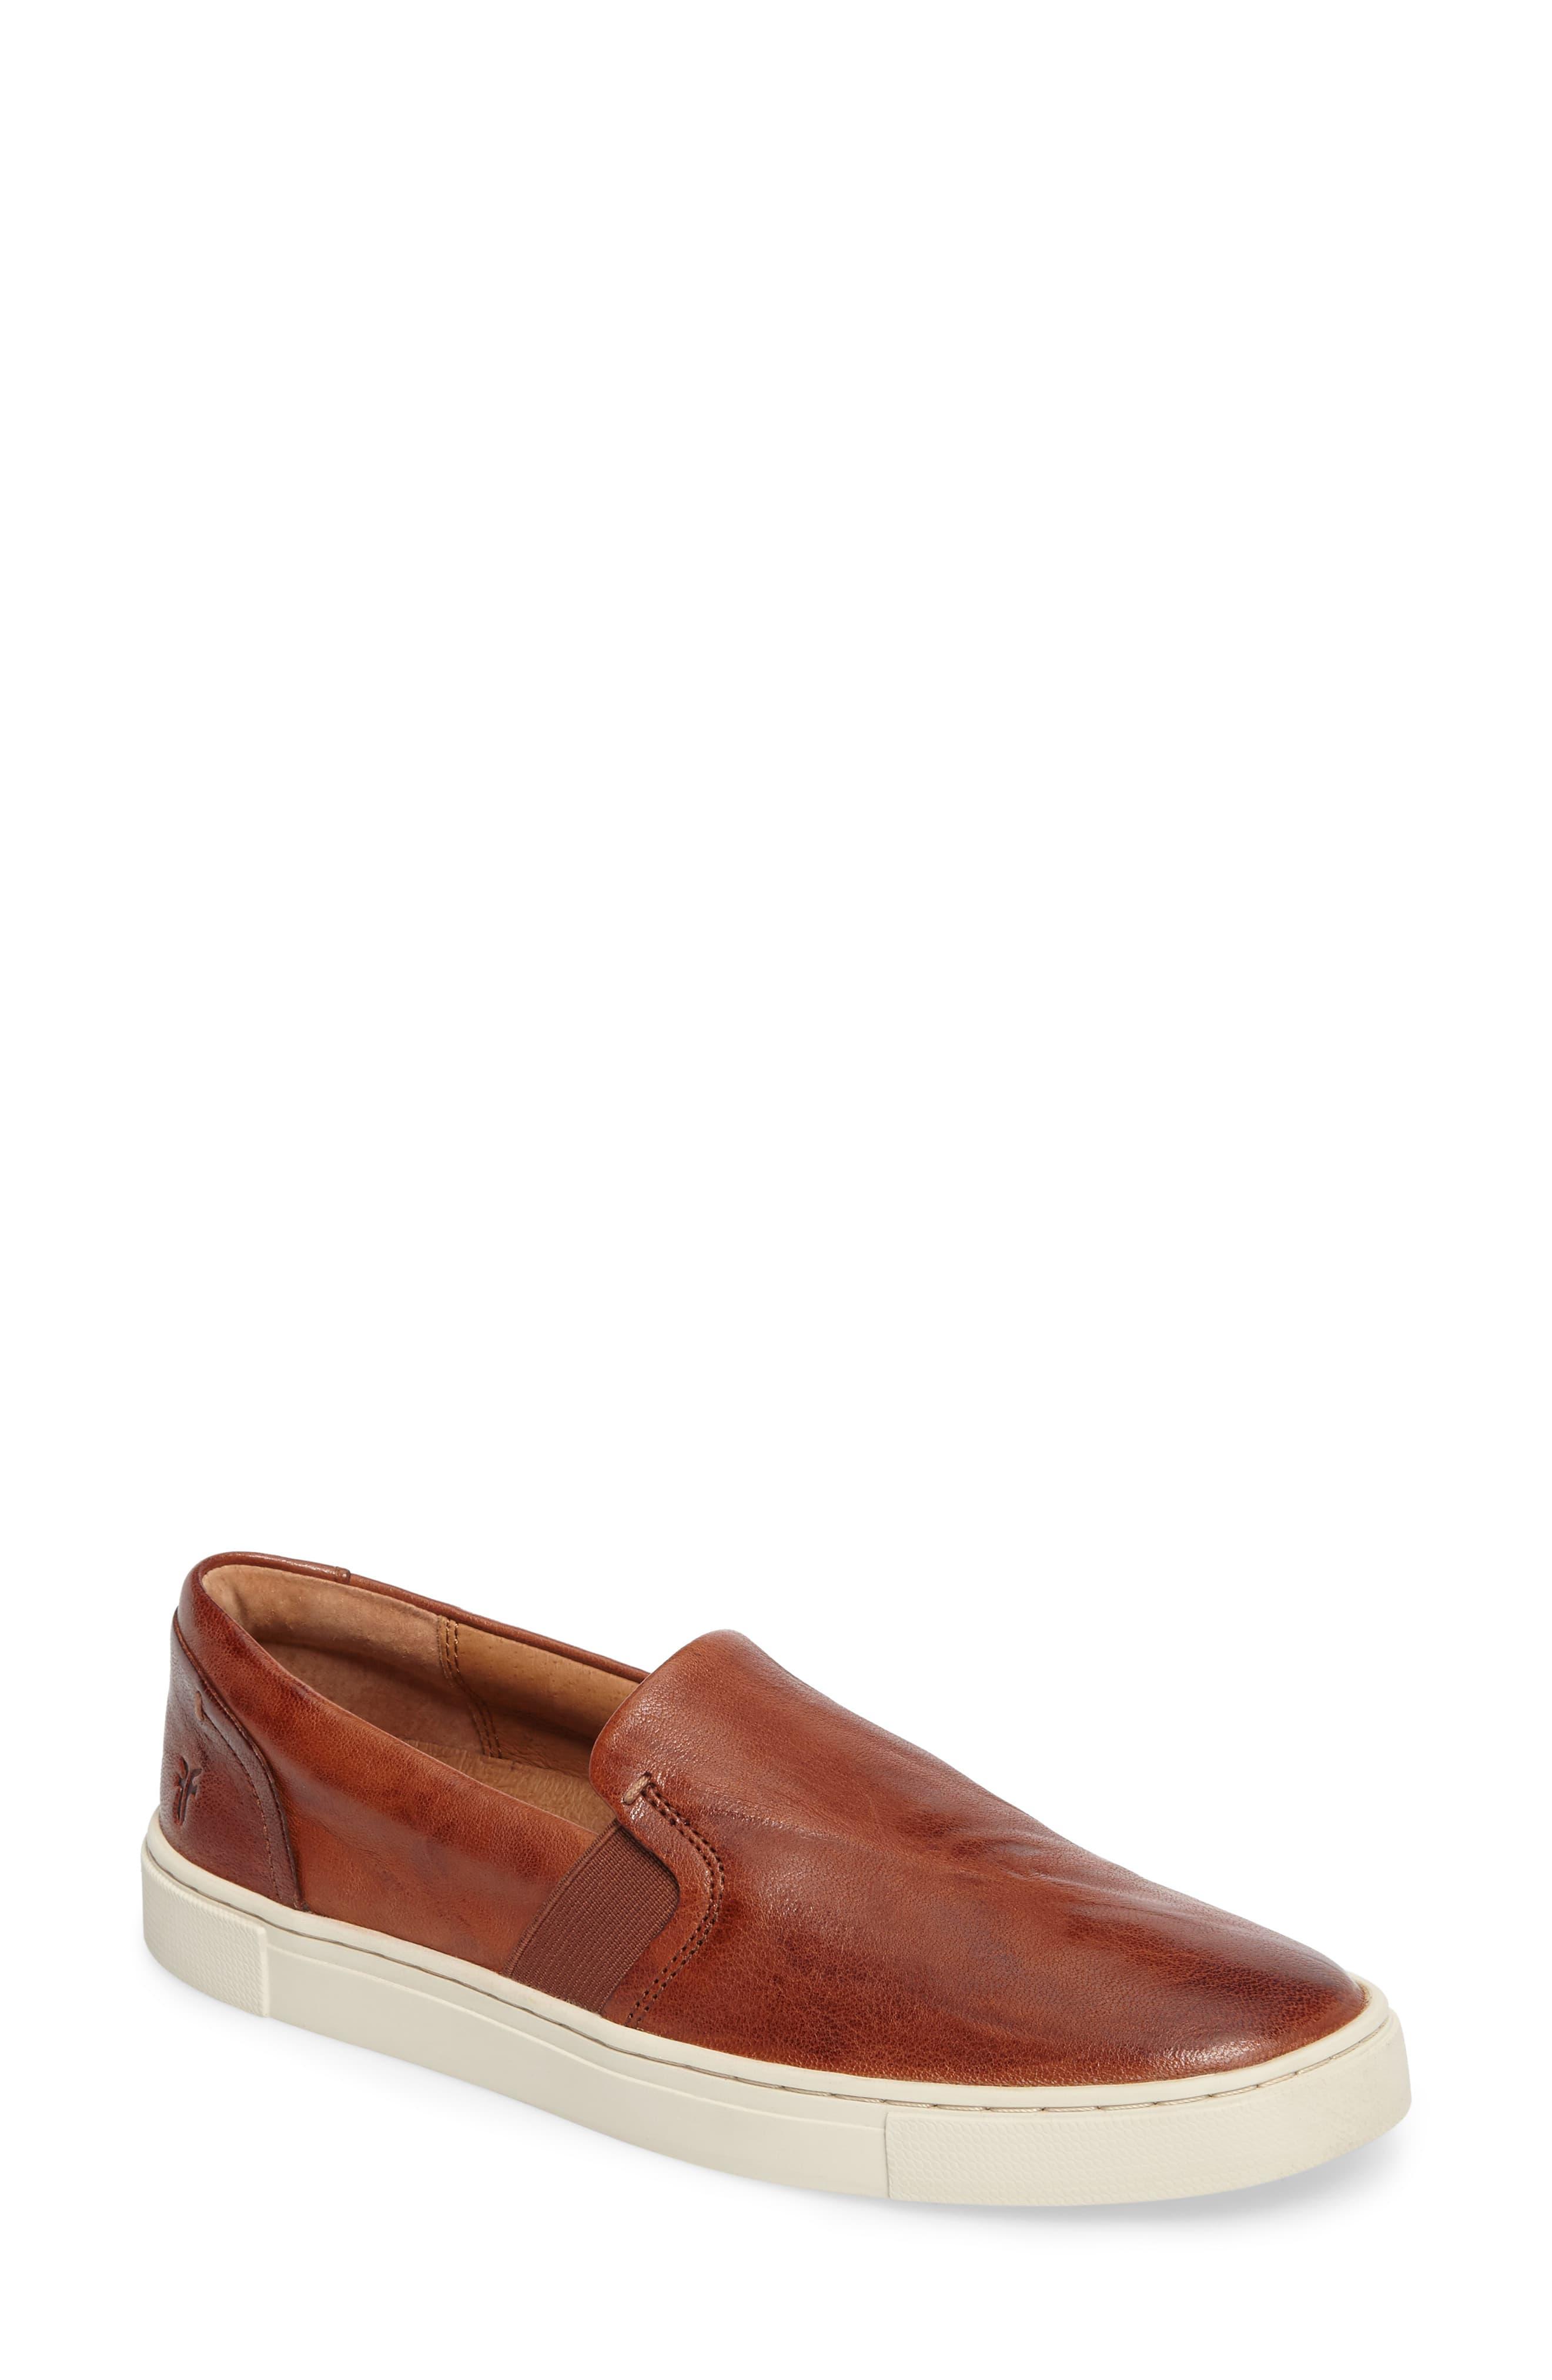 Frye Leather Ivy Slip-on Sneaker in Cognac (Brown) - Lyst